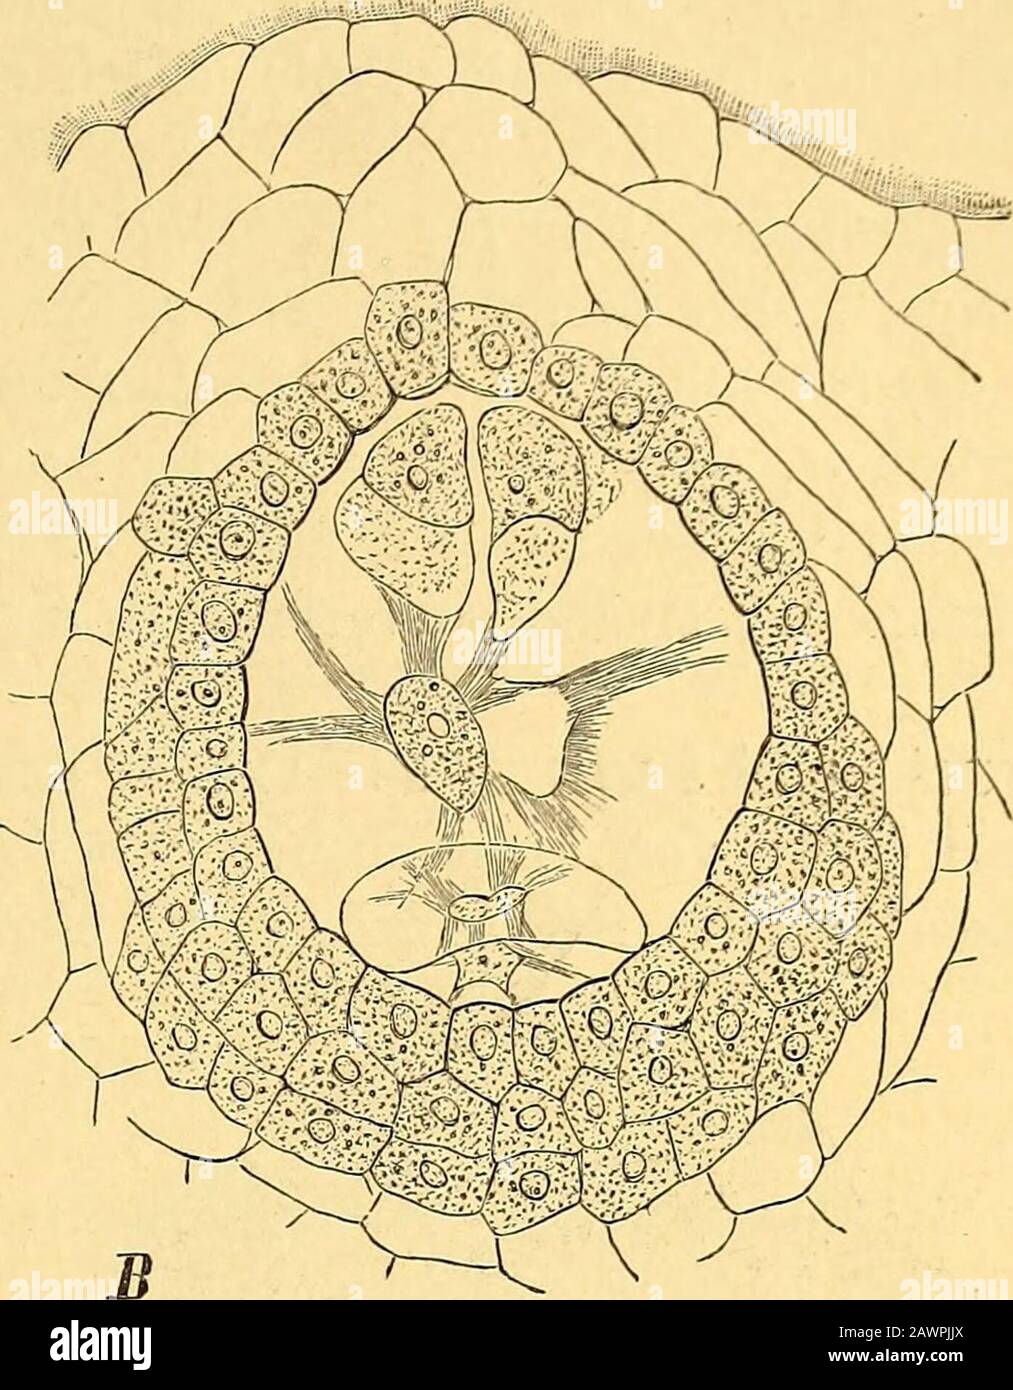 Das Pflanzenreich : regni vegetabilis conspectus . Fig. 2. Prosopanehe Burmeisteri De Baryvon PlacentarplattenSamenknospe A Querschnitt dos Ovariums mit den 3 GruppenB Embryosack der mit dem umwallenden Placentargewebe verwachsenen [A u. B nach De Bary; C nach Solms). G Reifer Same im Längsschnitt Beschaffenheit hat. An der Wand des Tubus perigonii steht ein gleichzähliger Wirtel super-ponierter Stamina, die seitlich mit einander verbunden entweder einen zusammenhängendenvor den Perigonmedianen anschwellenden Wulst, oder bei Prosopanehe einen kolbenförmigendas Stigma überdachenden Körper bilde Stock Photo